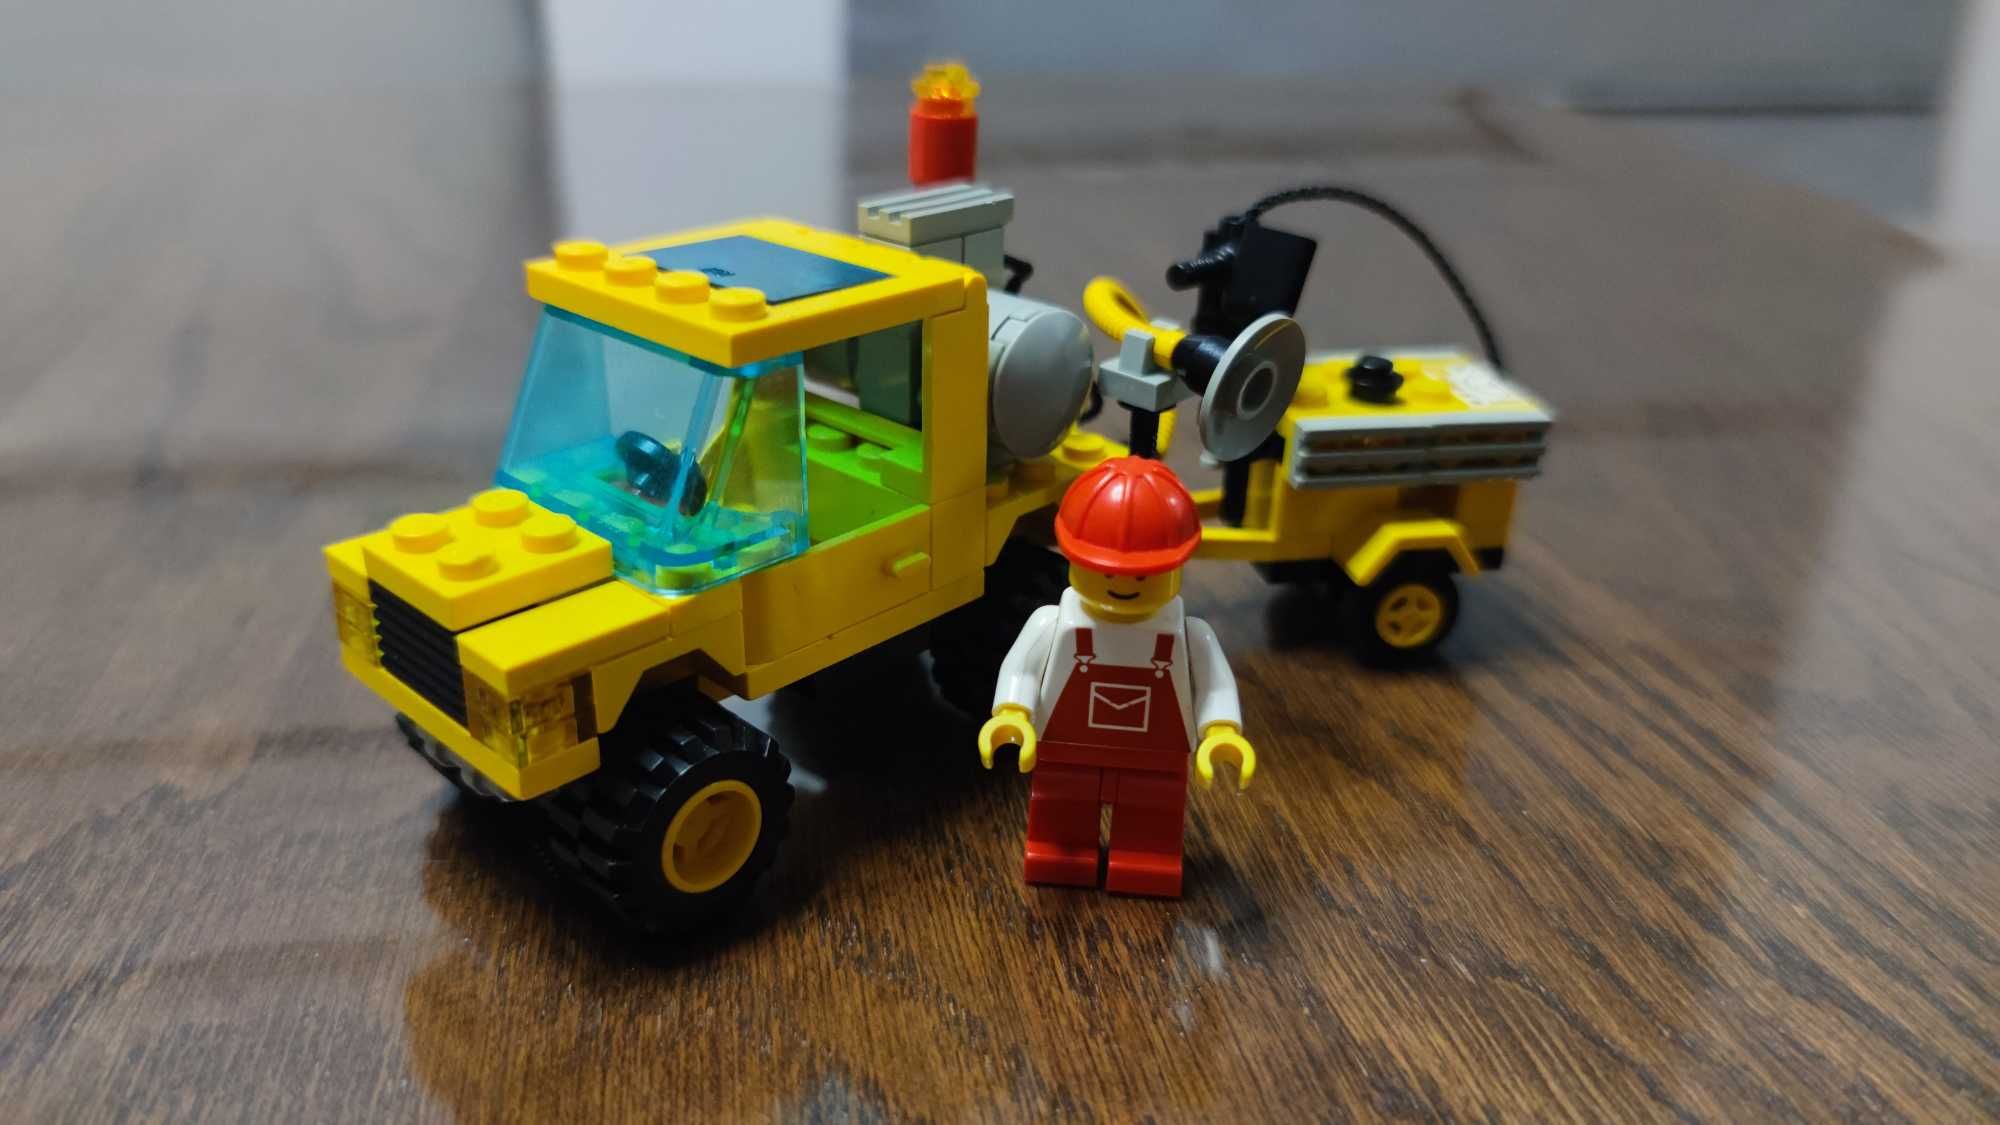 LEGO 6667 - Pothole Patcher